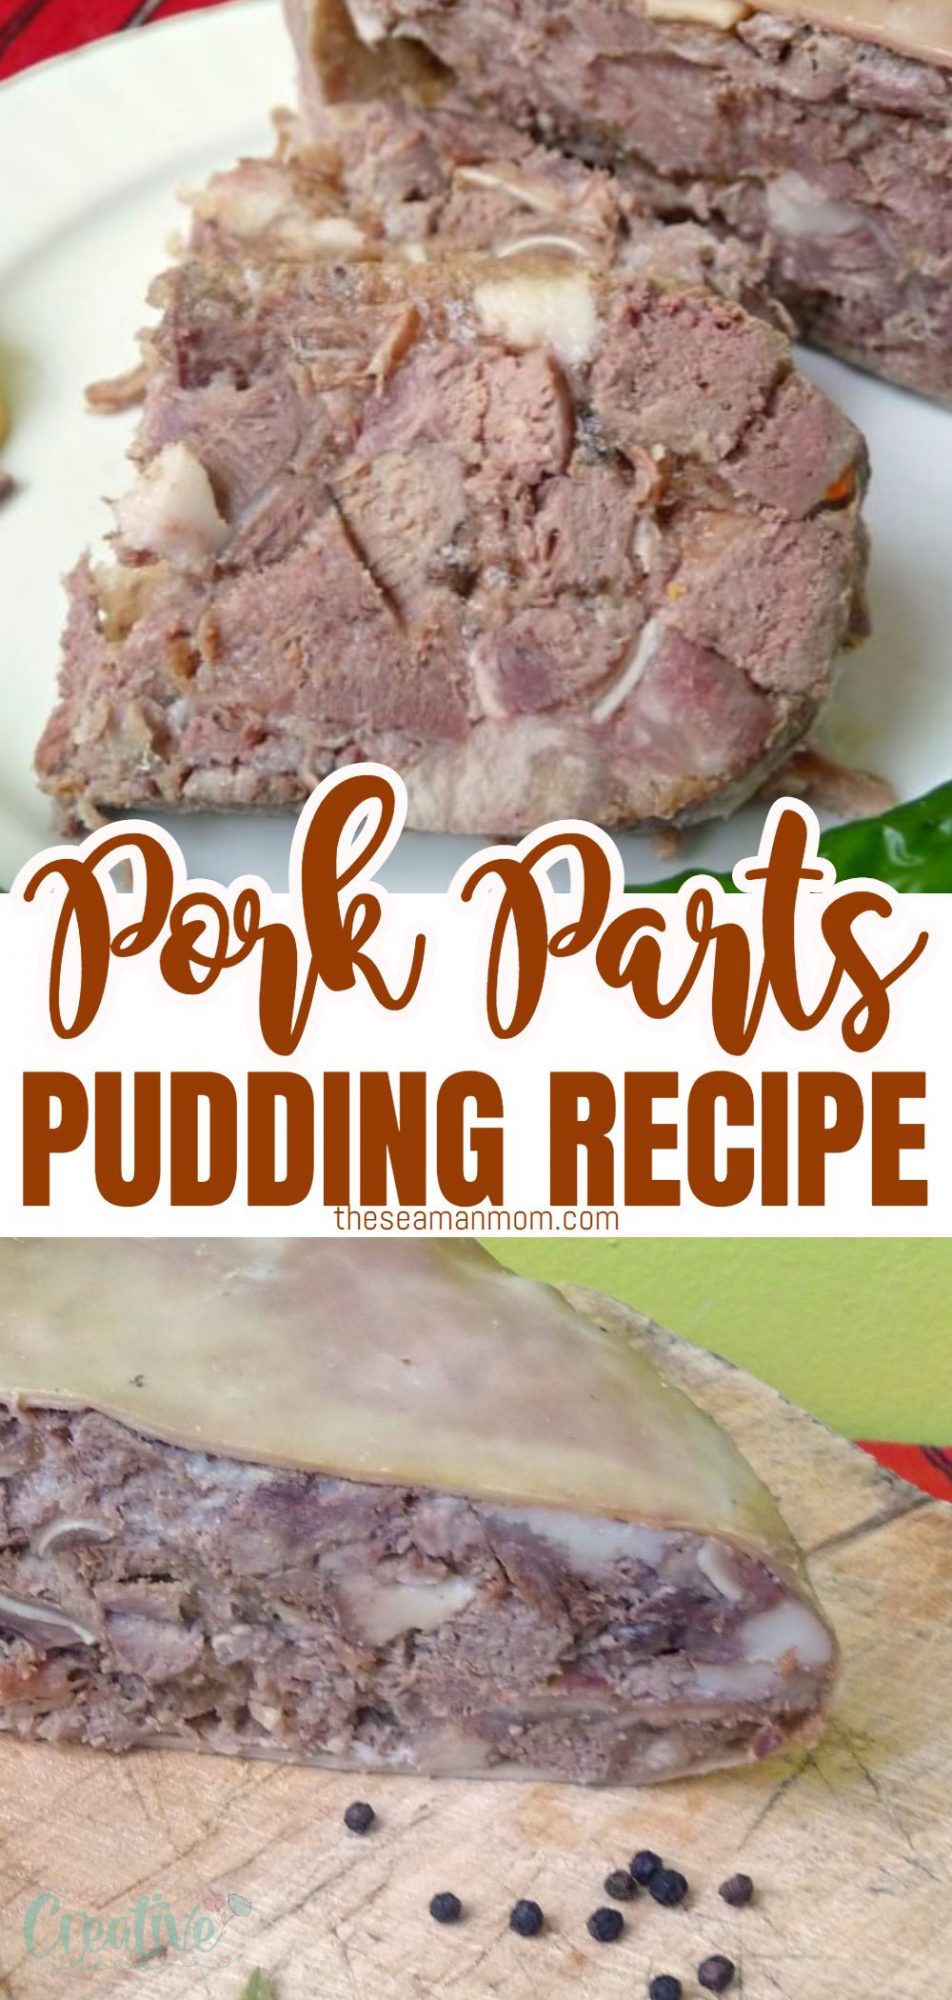 Pork pudding